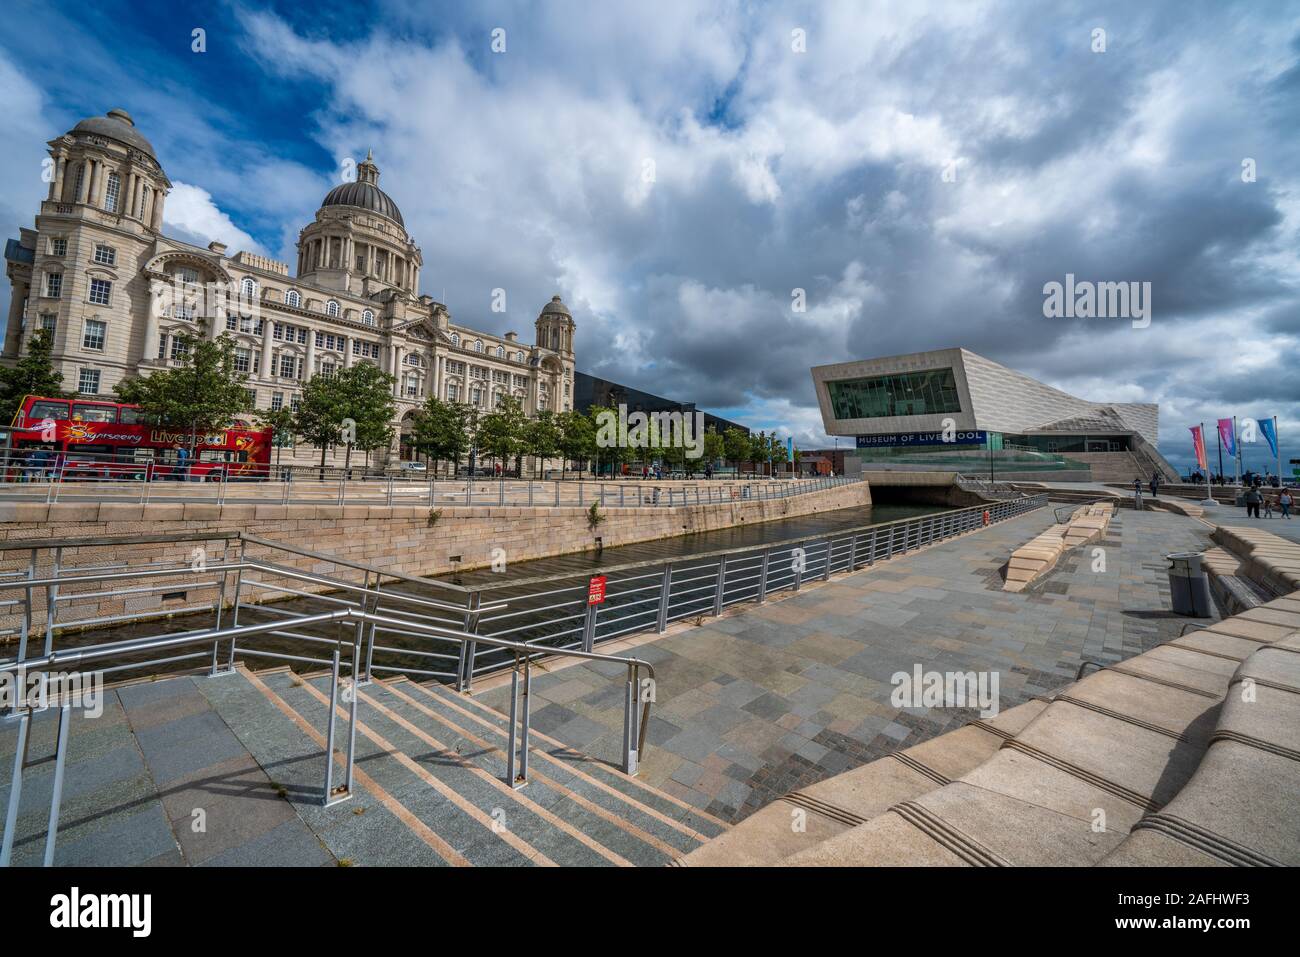 LIVERPOOL, Royaume-Uni - 11 août : c'est le fameux Pier Head building et le Musée de Liverpool le long de son front de mer le 11 août 2019 Banque D'Images